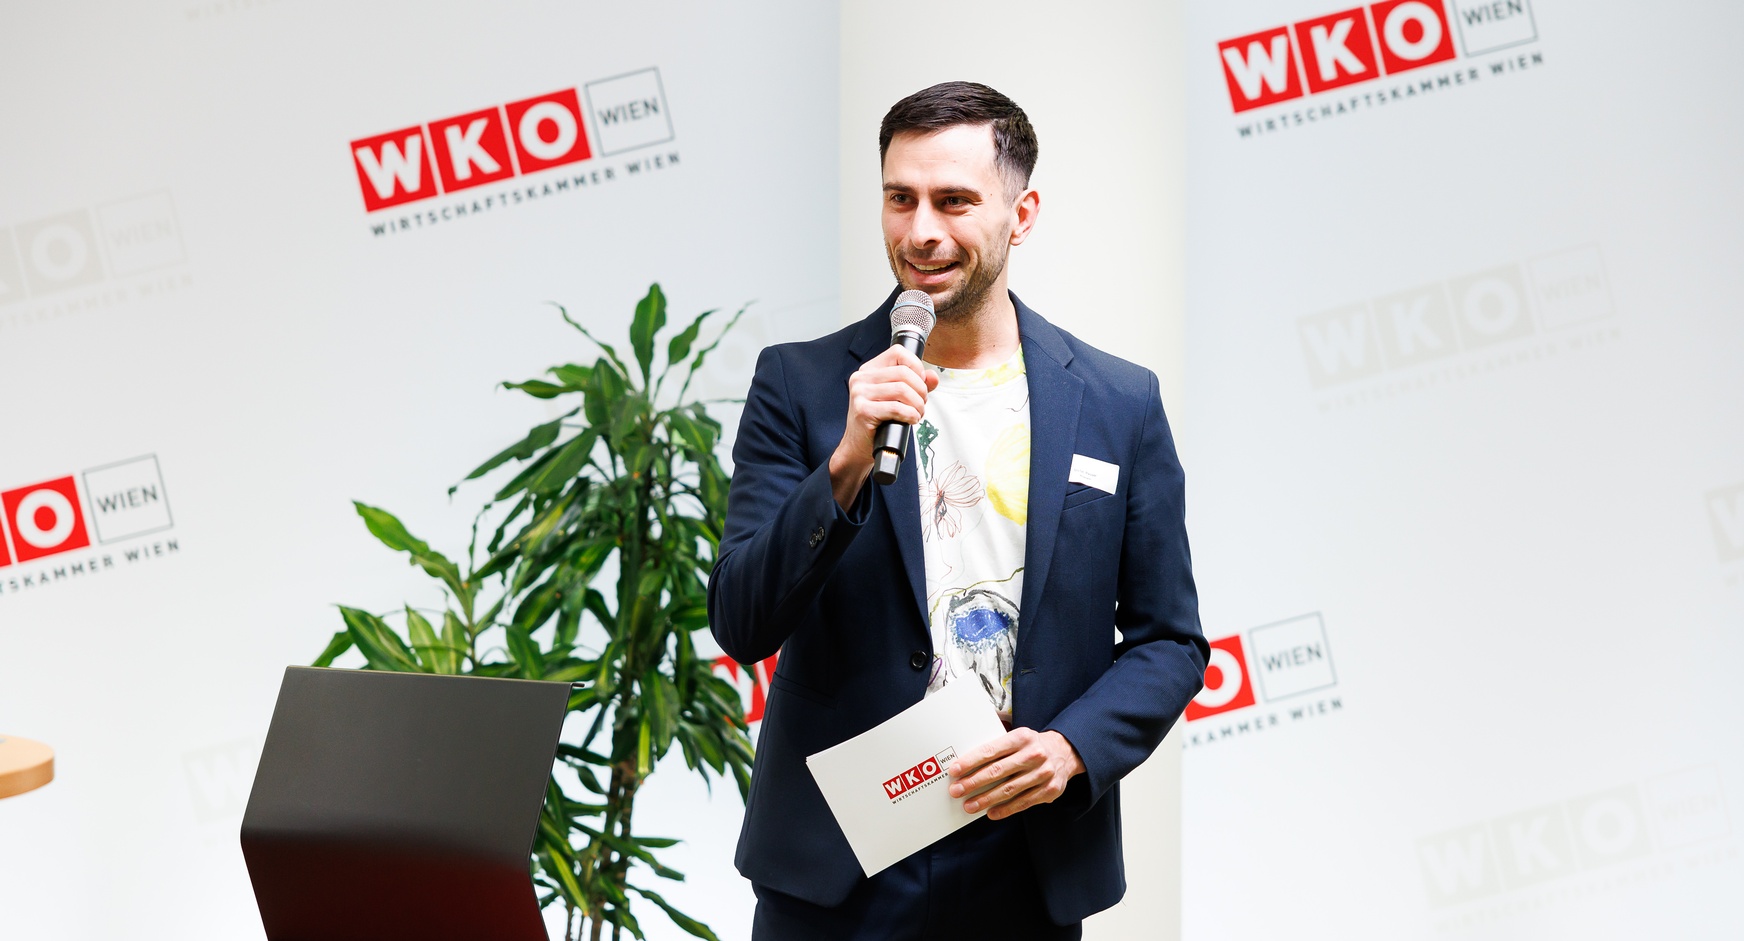 Stehende Person spricht in Mikrofon vor großer Wand mit rotweißem Logo WKO und Schriftzug Wirtschaftskammer Wien, hält in einer Hand Kärtchen mit rotweißem Logo WKO, daneben rotschwarzer Sessel und Zimmerpflanze